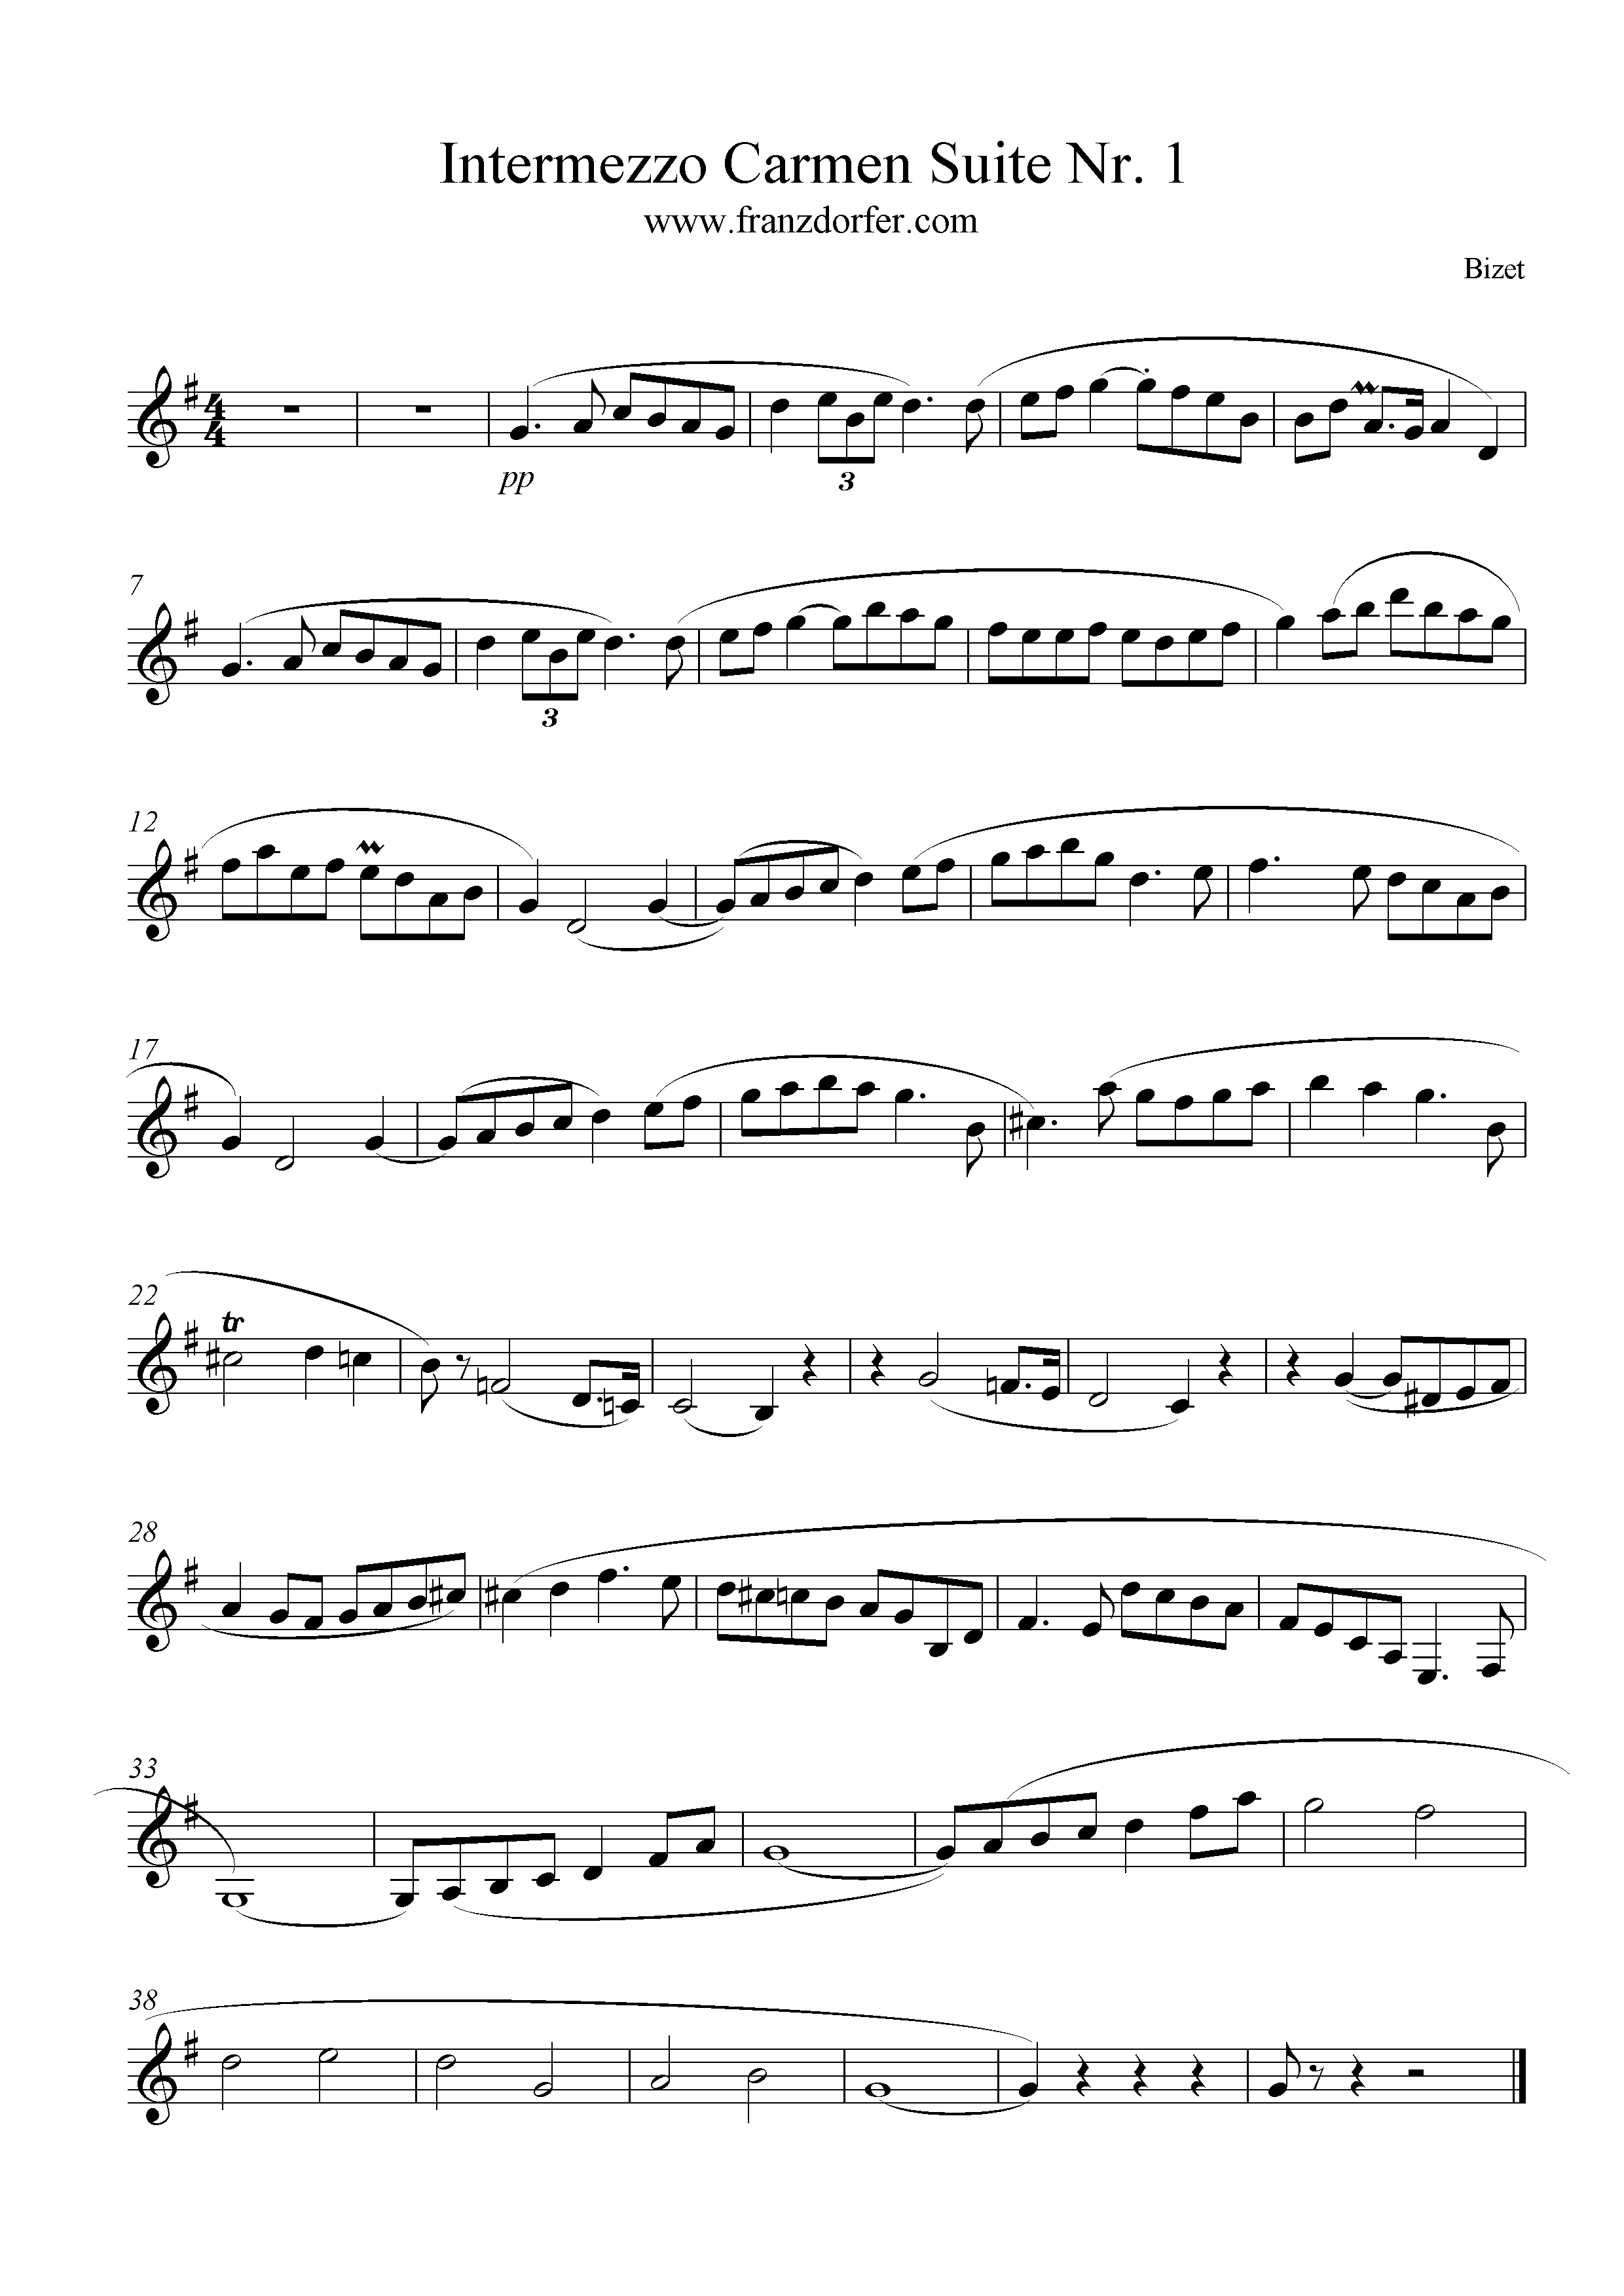 Intermezzo Carmen for Clarinet, G-Major